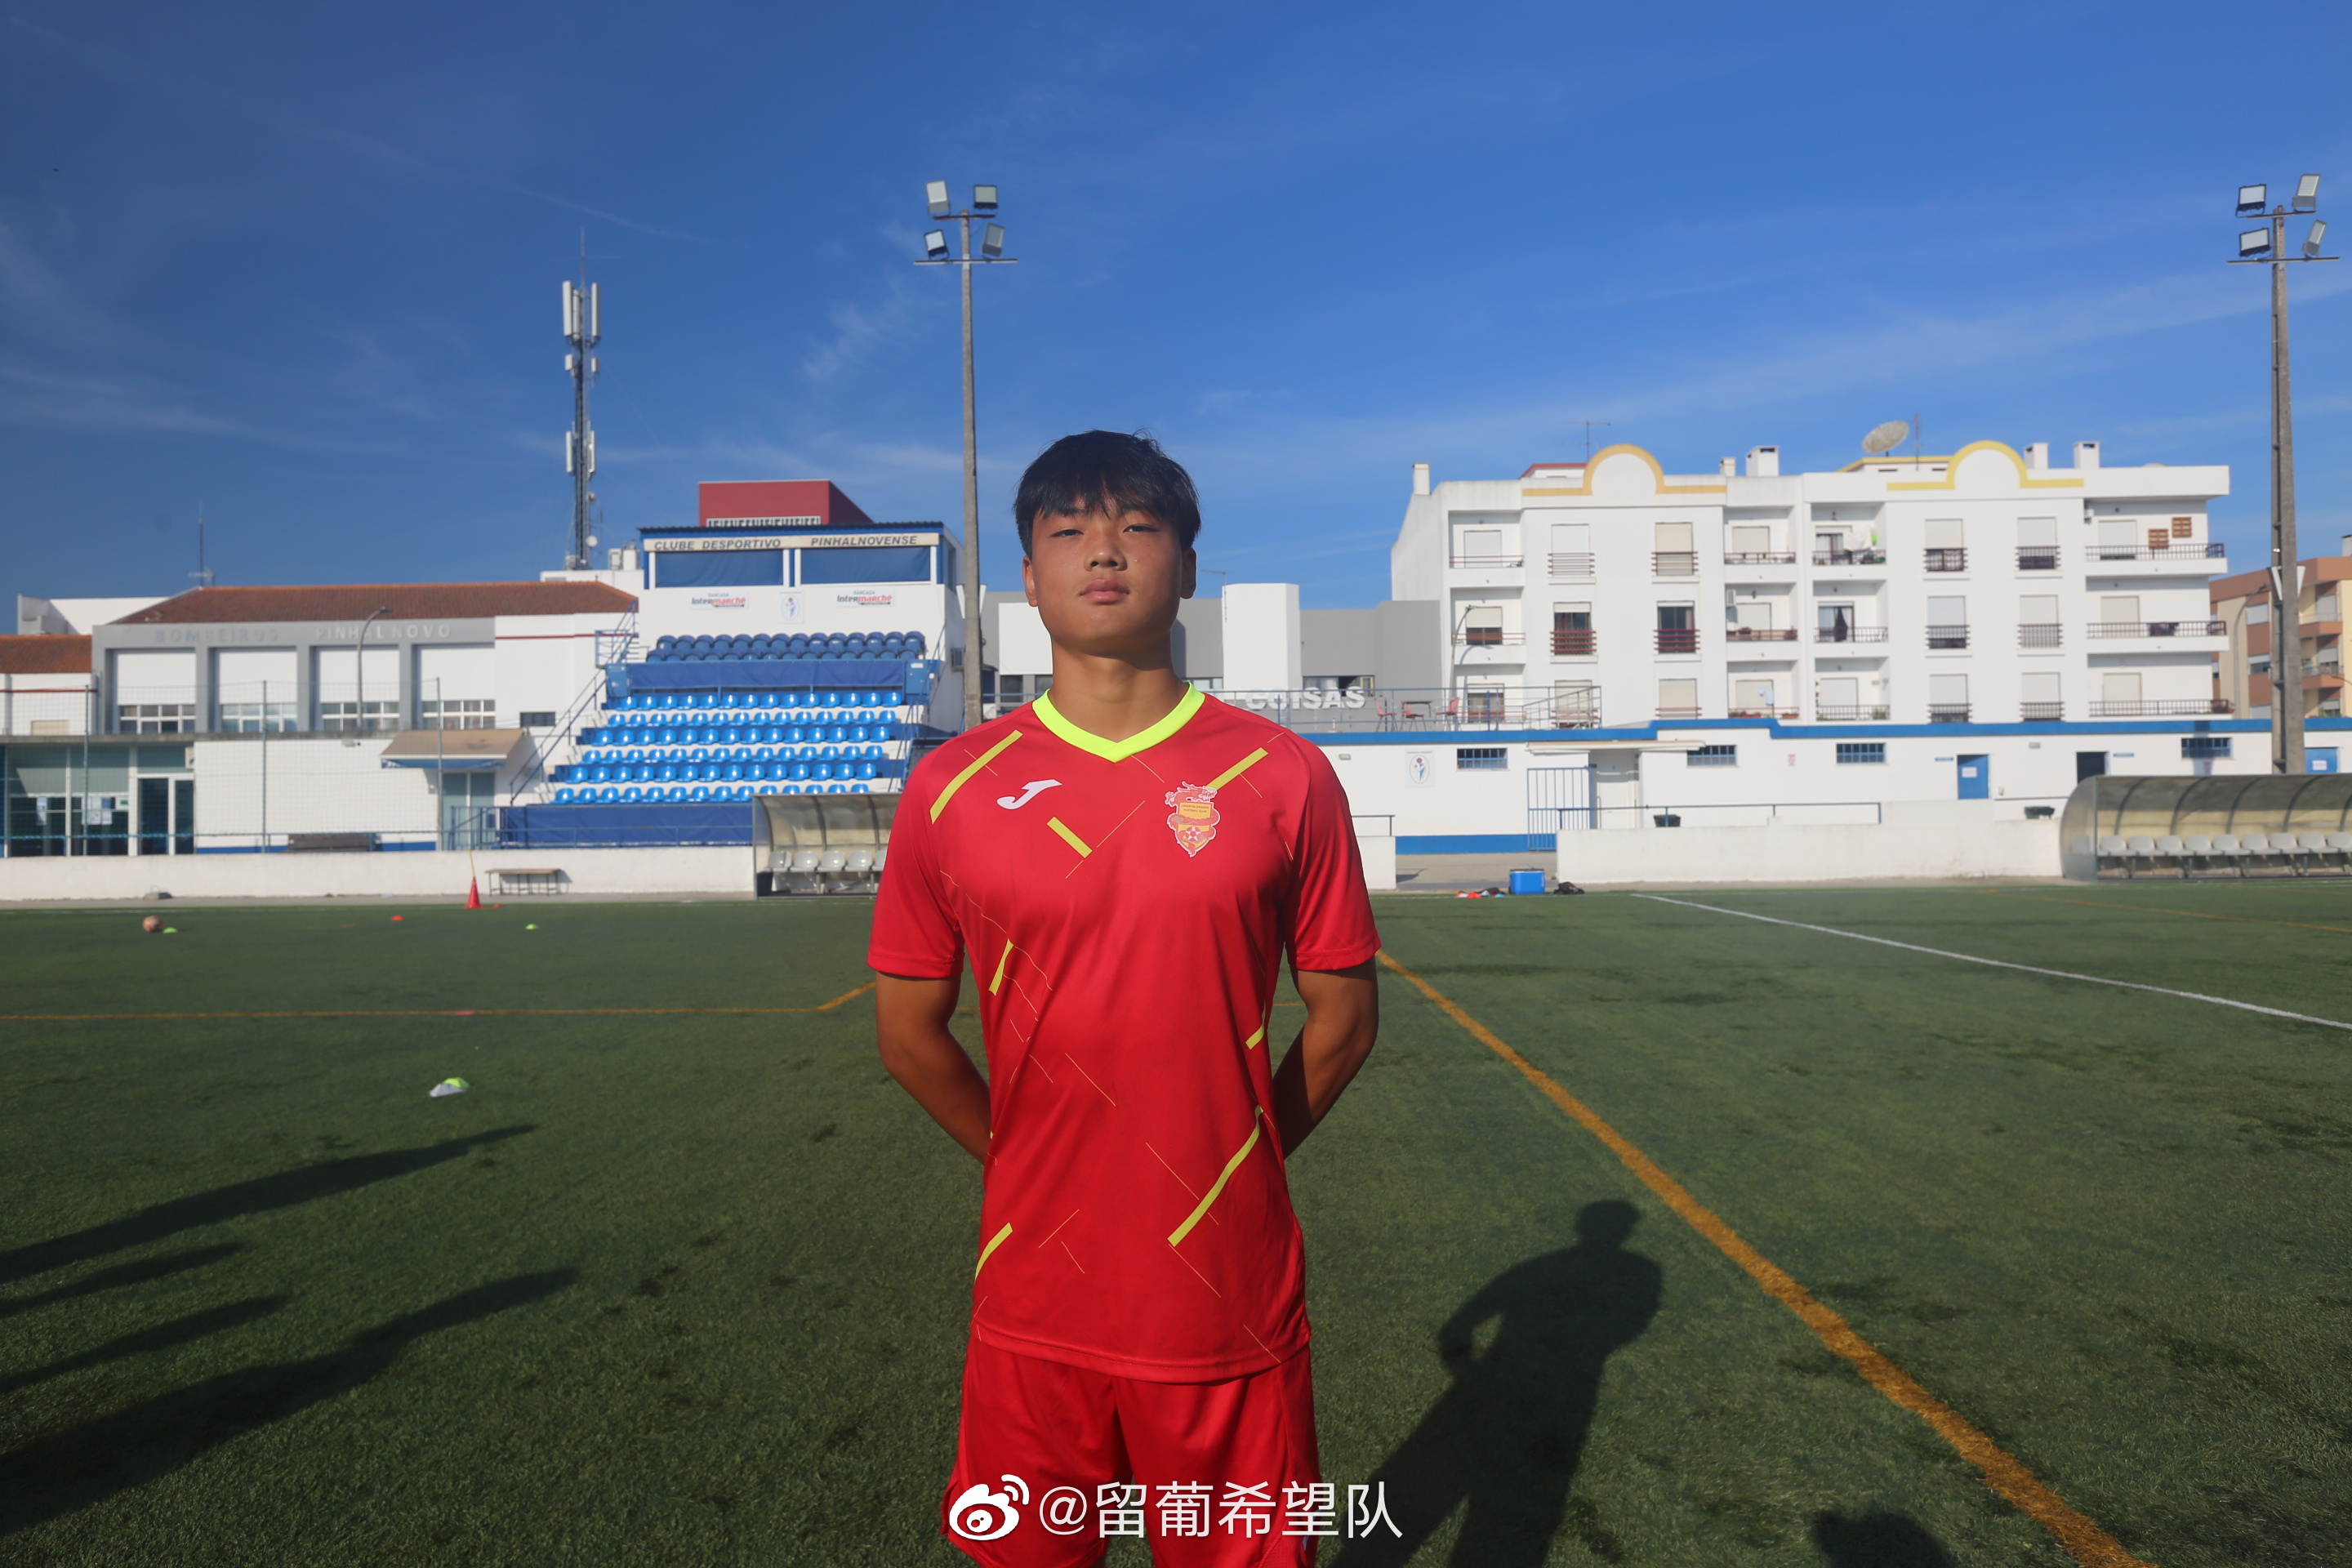 留葡少年陈康林:在成年队还是扛不动对手 希望多踢几年能适应